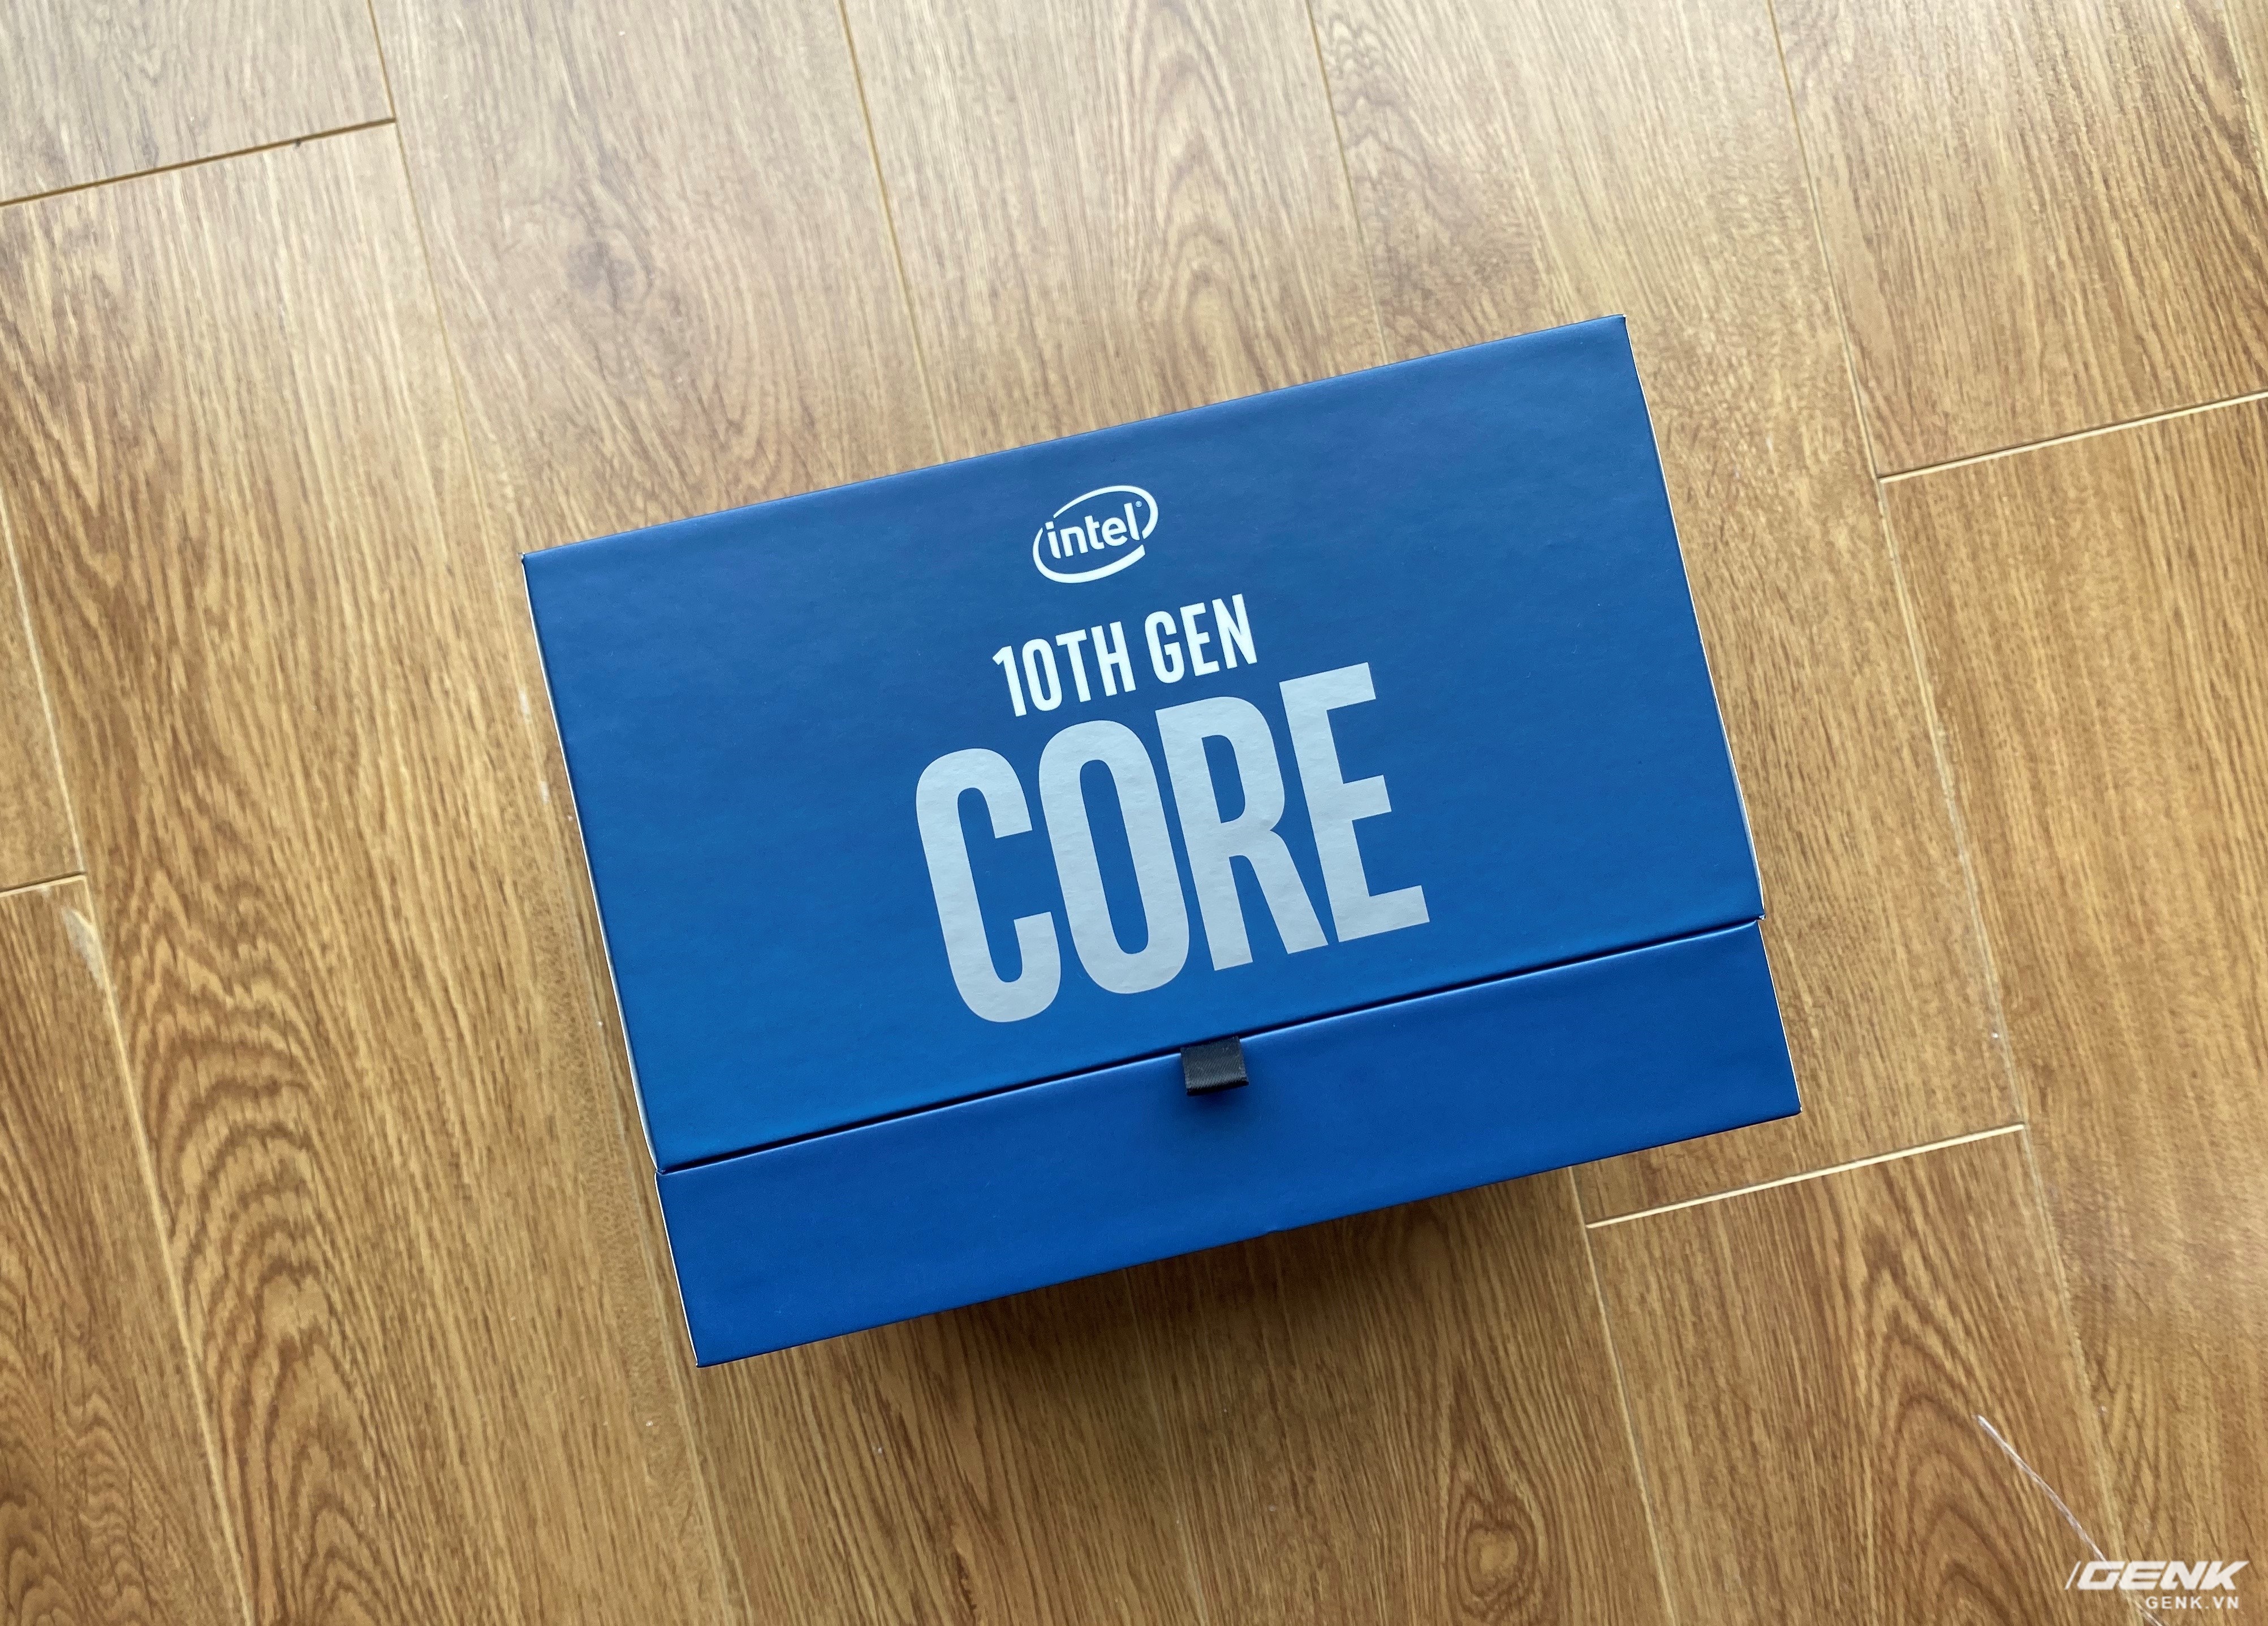 Đánh giá Intel Core i9-10900K: Xứng danh CPU chơi game tốt nhất thị trường - Ảnh 1.